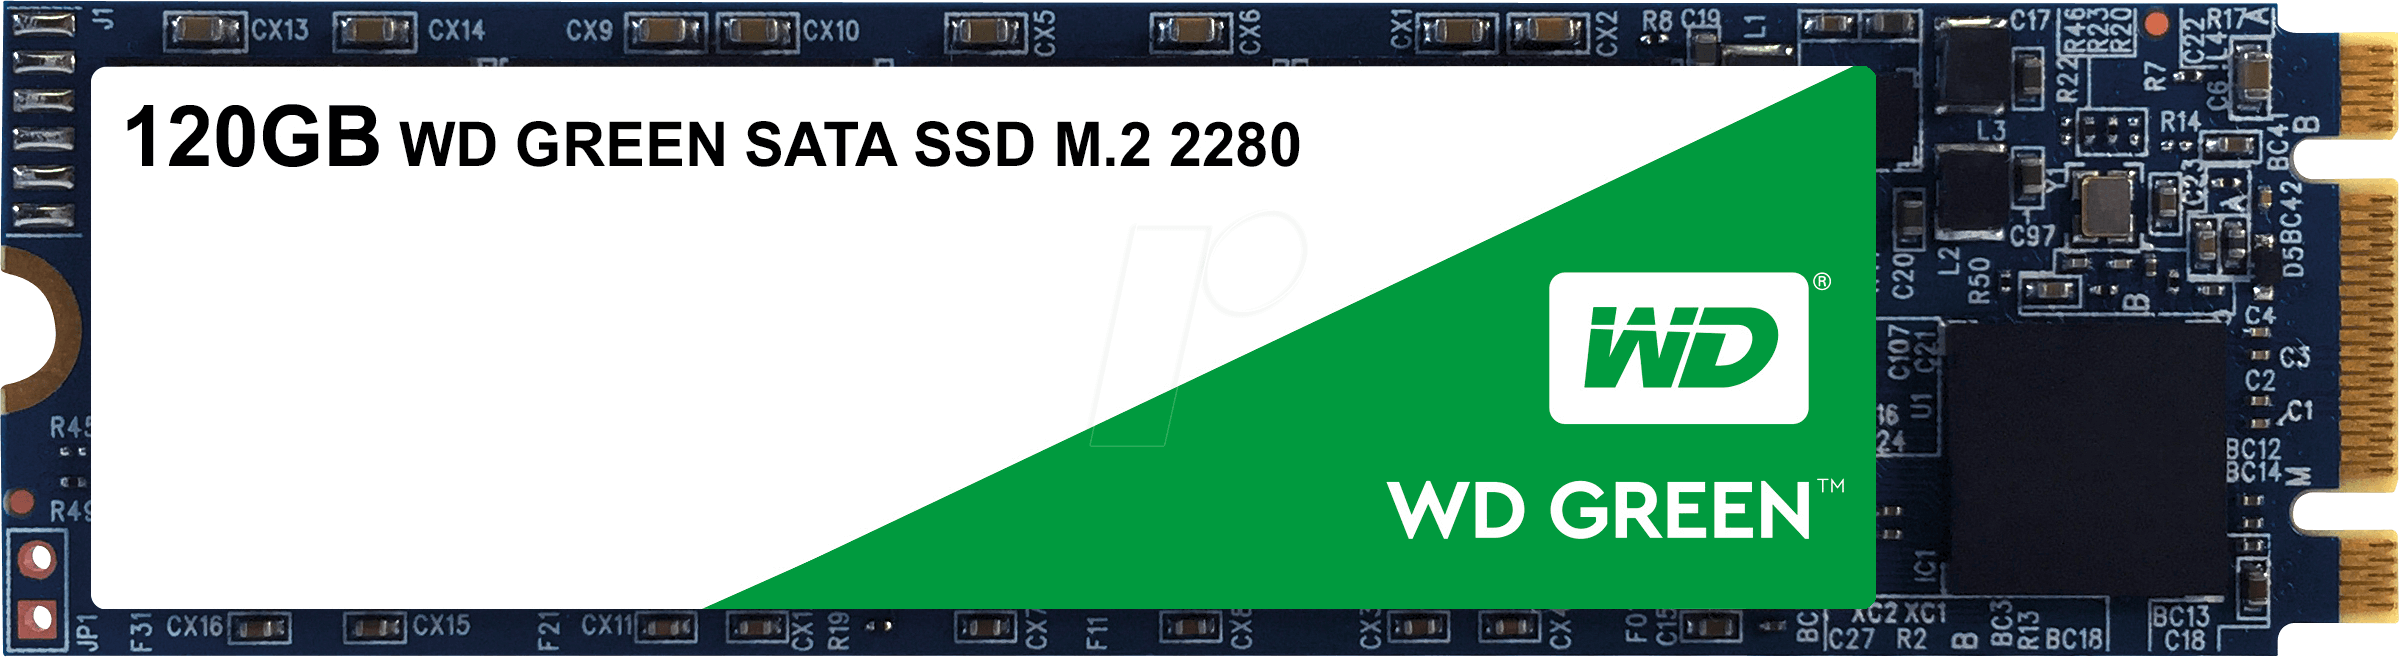 Ssd Western Digital Green Sata M 2 2280 120gb (2399x657), Png Download